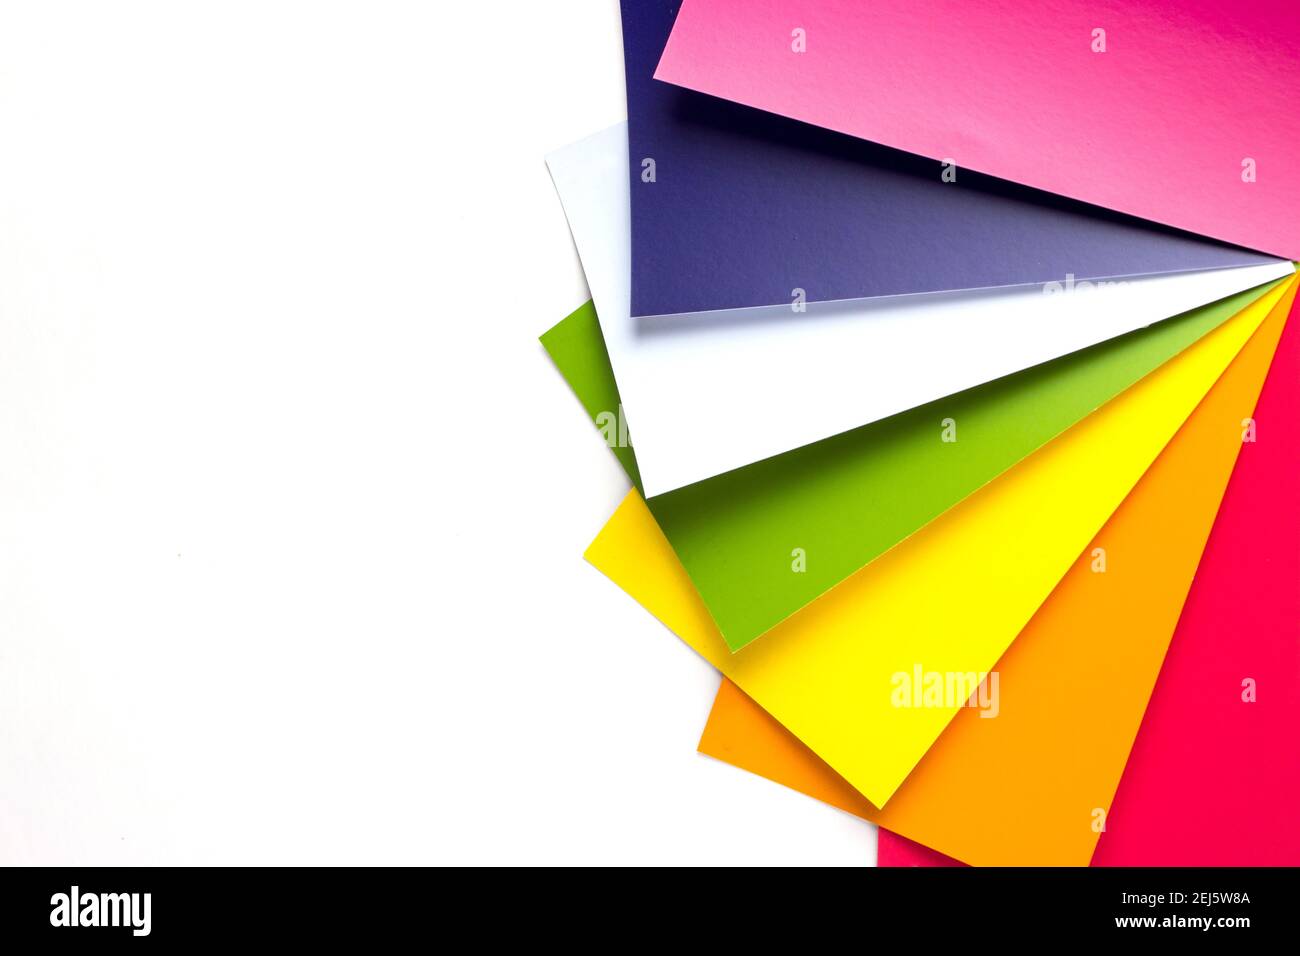 Livre de nuances de couleurs. Guide des couleurs pour la conception. RVB. CMJN. Exemple de catalogue de couleurs Banque D'Images